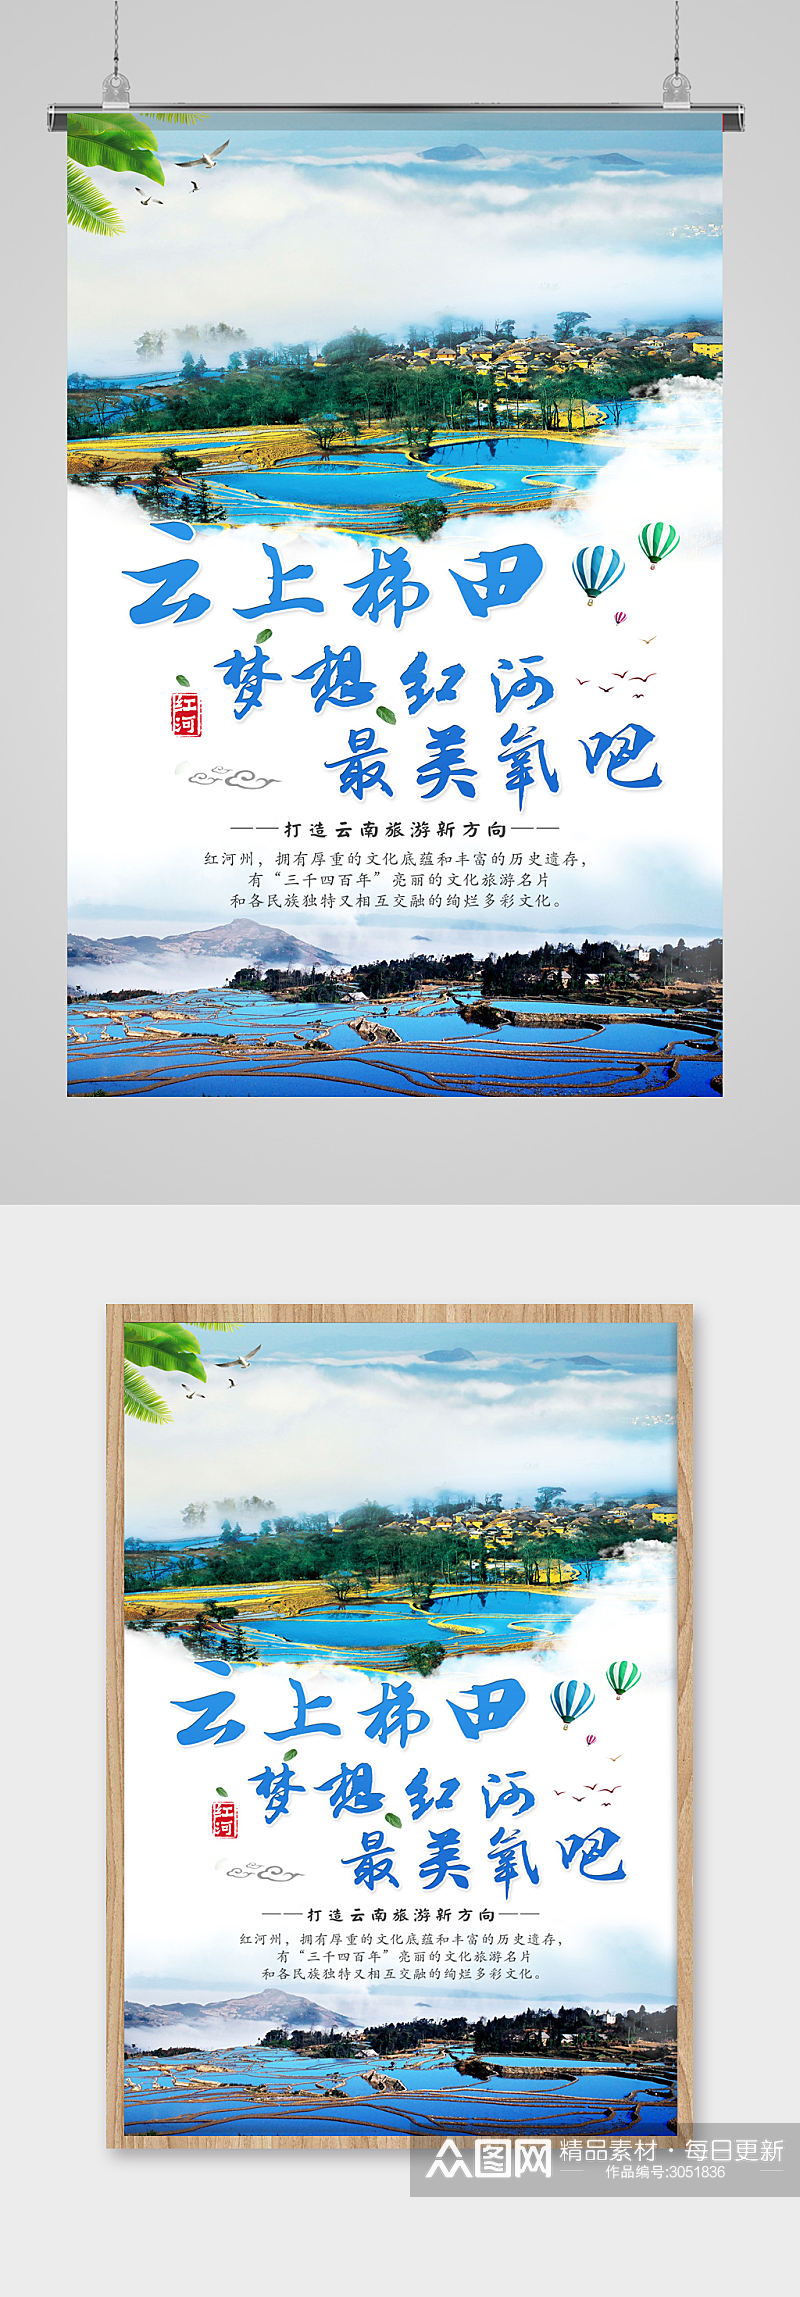 美丽云南旅游宣传海报素材